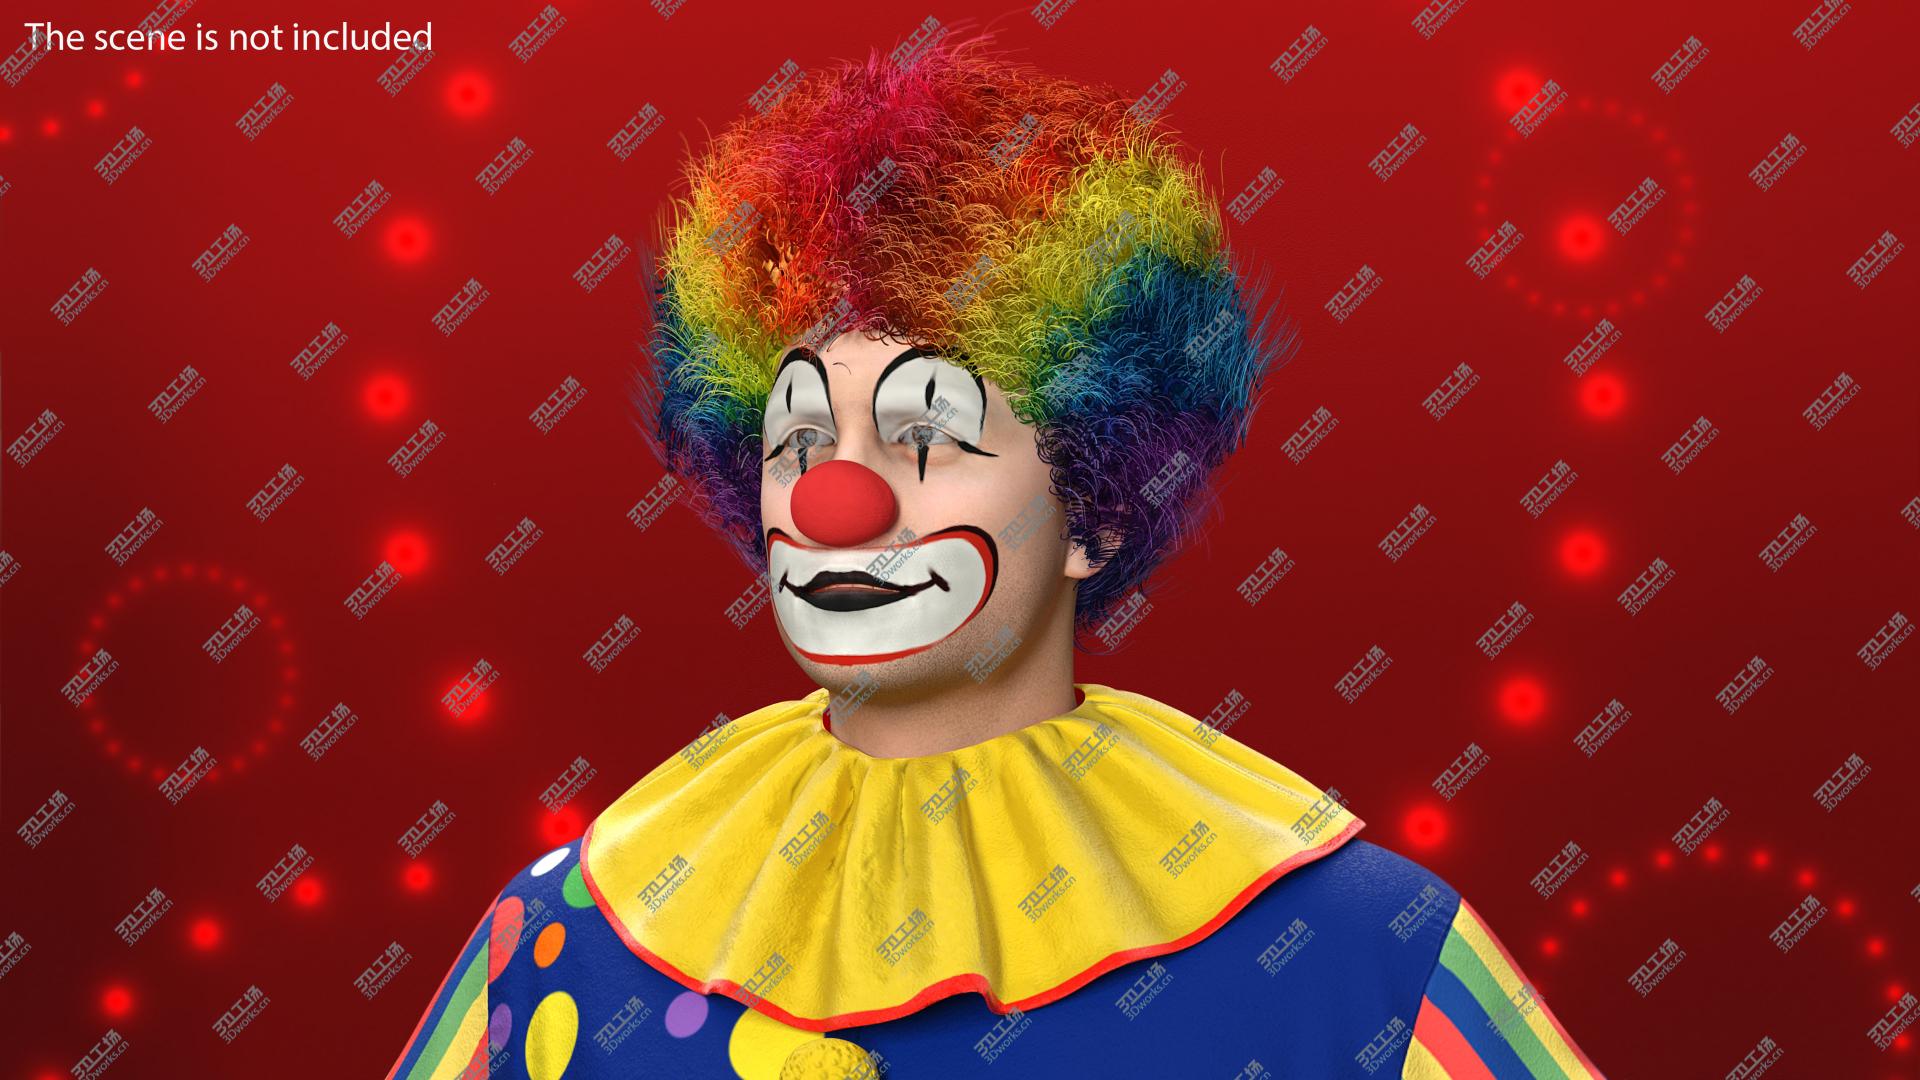 images/goods_img/202104093/3D model Funny Clown Costume Fur/5.jpg